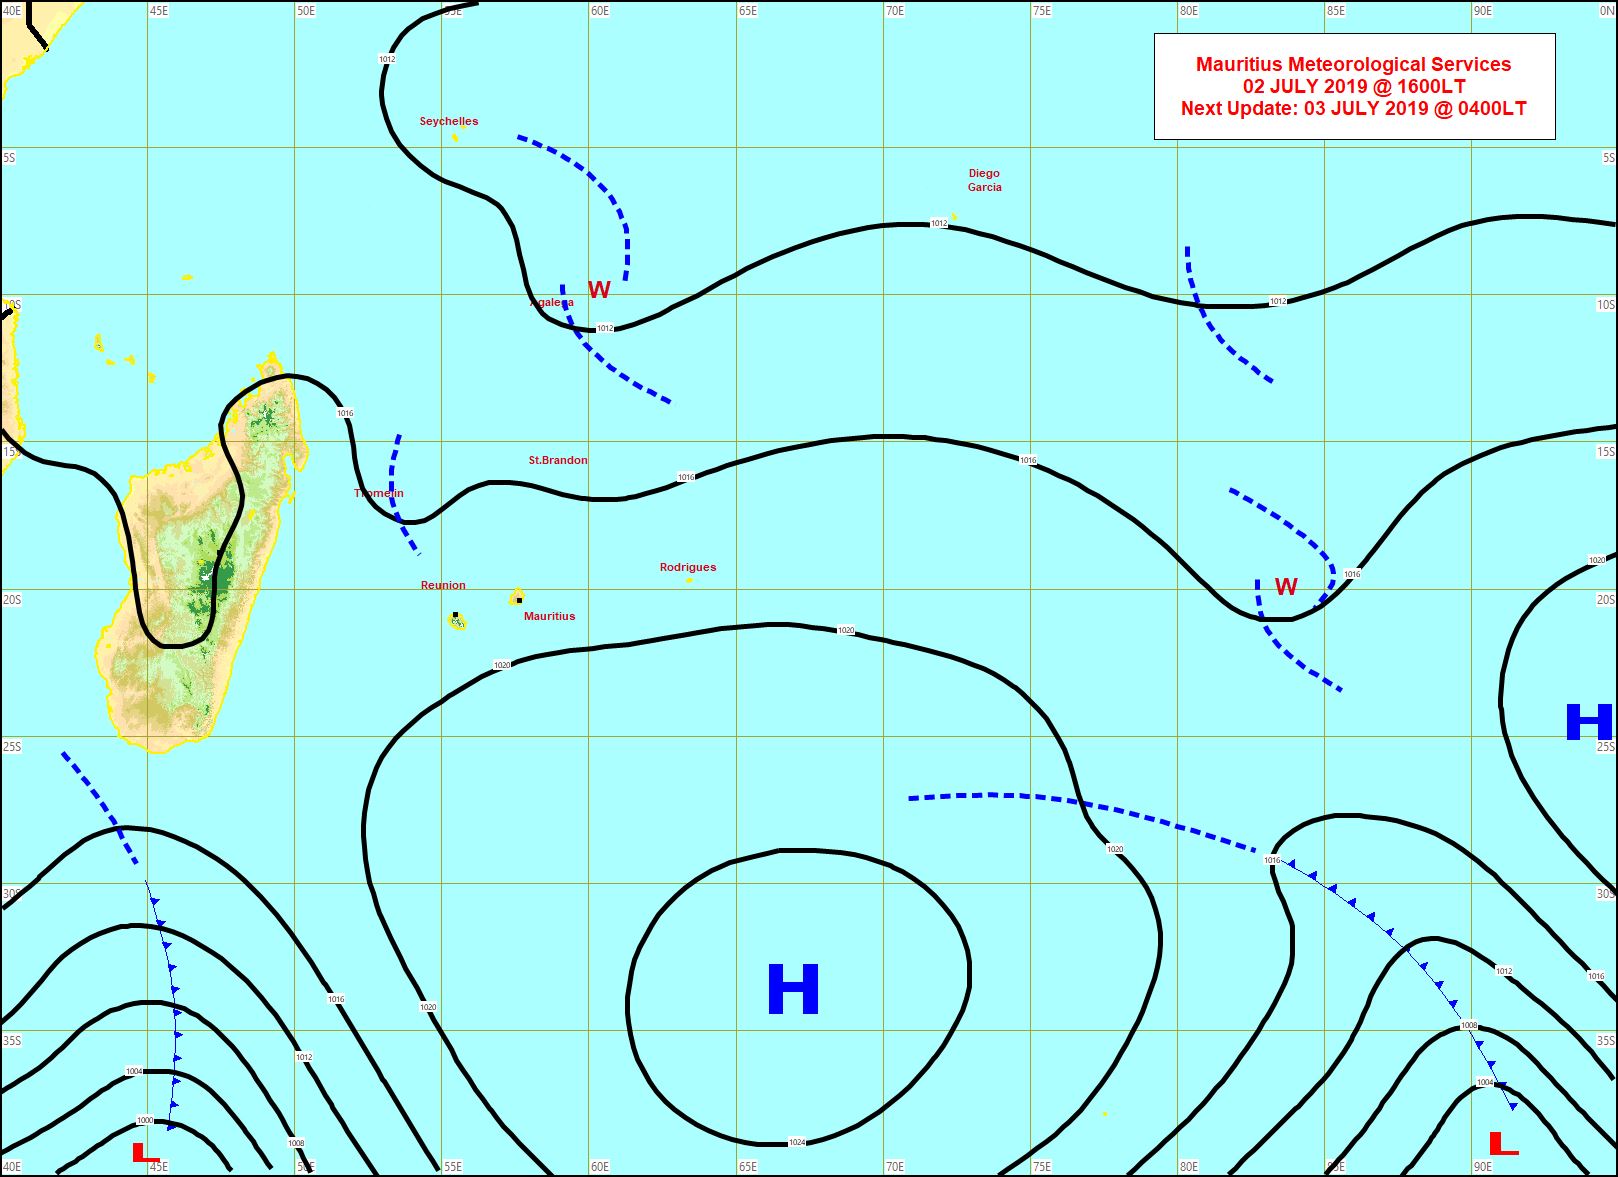 L'anticyclone(H) affaibli se décale vers l'Est. Une dépression extra-tropicale accompagnée de son système frontal apparaît au sud de la Grande Ile. Entre les deux centres d'action le vent ralentit nettement. MMS